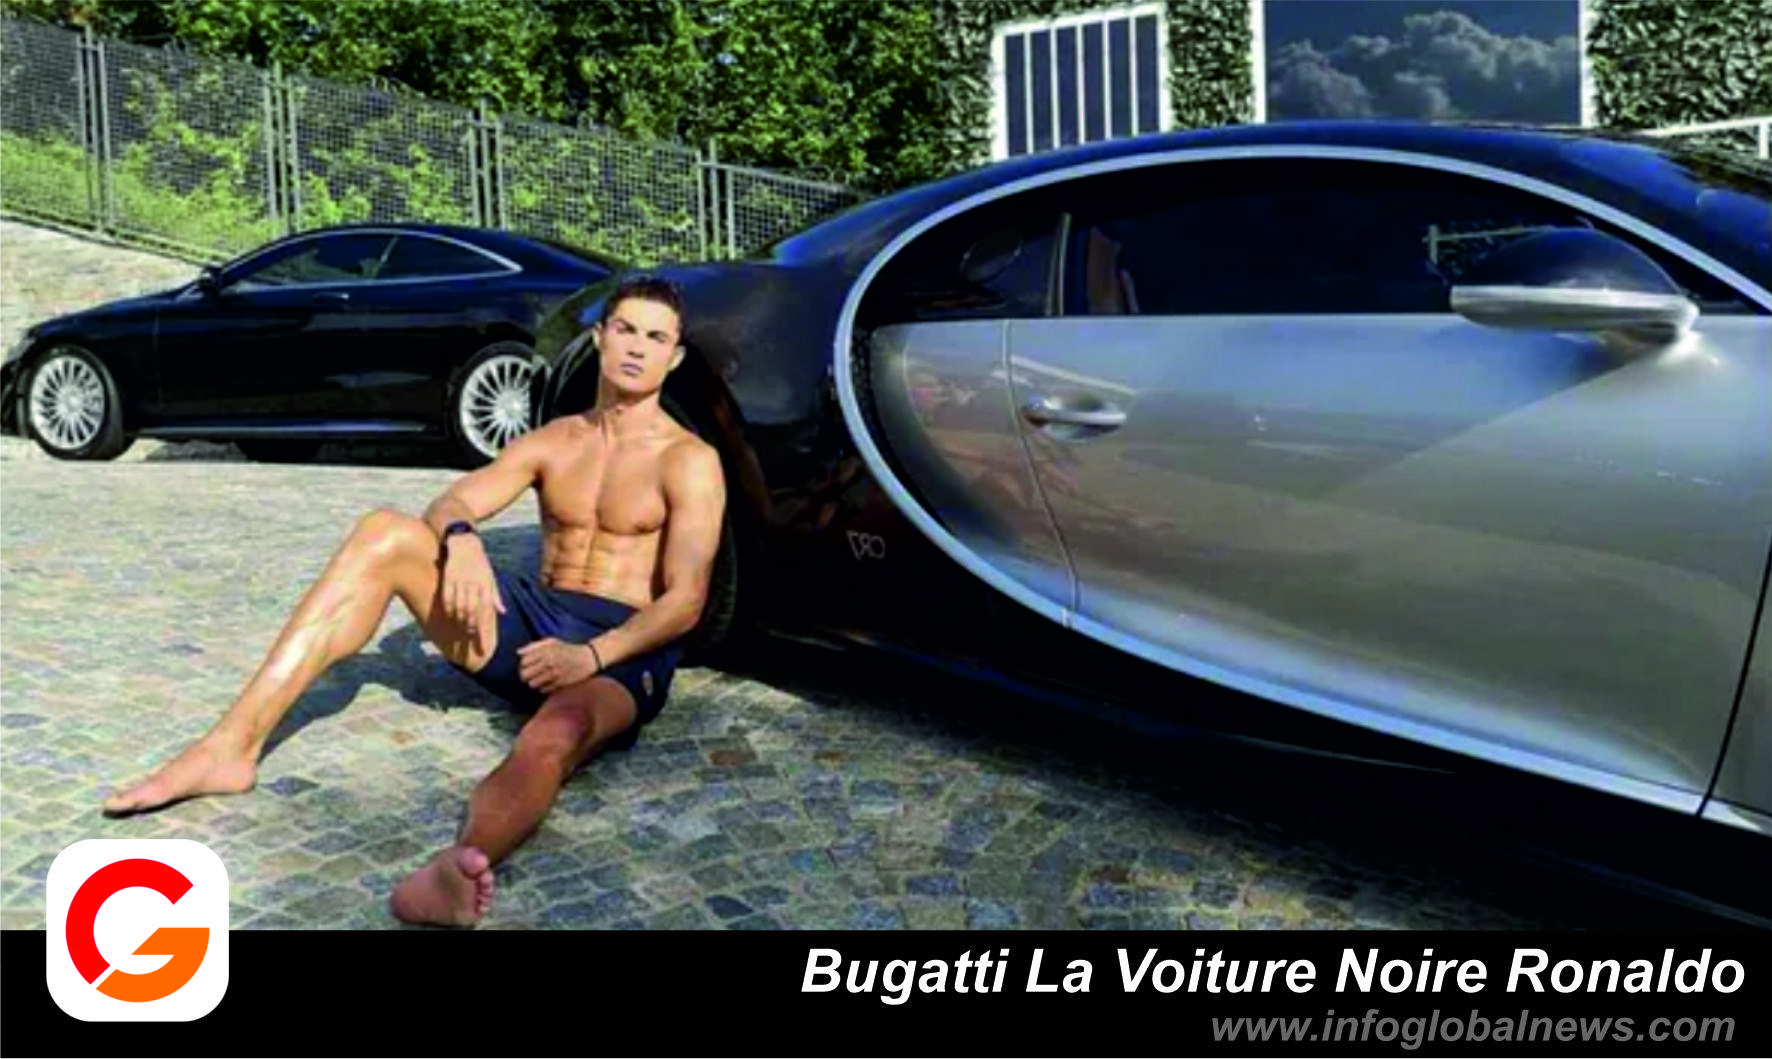 Bugatti La Voiture Noire ronaldo